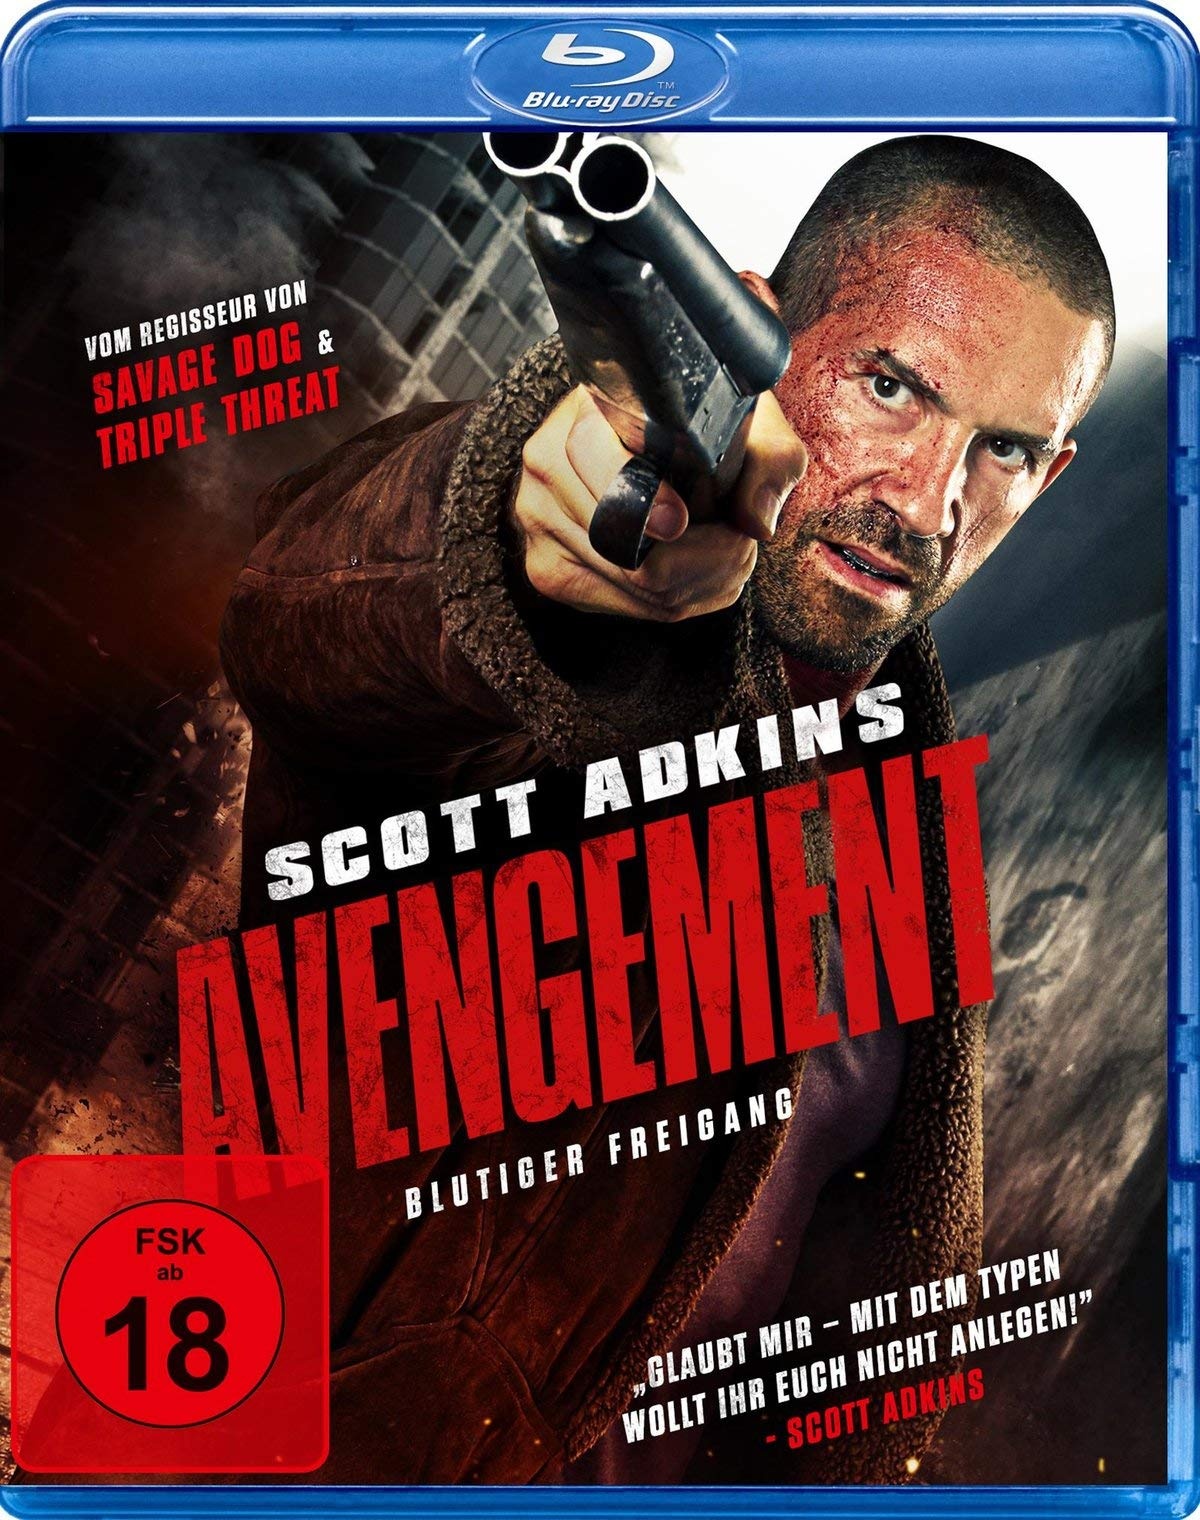 Avengement - Blutiger Freigang [Blu-ray] (Neu differenzbesteuert)